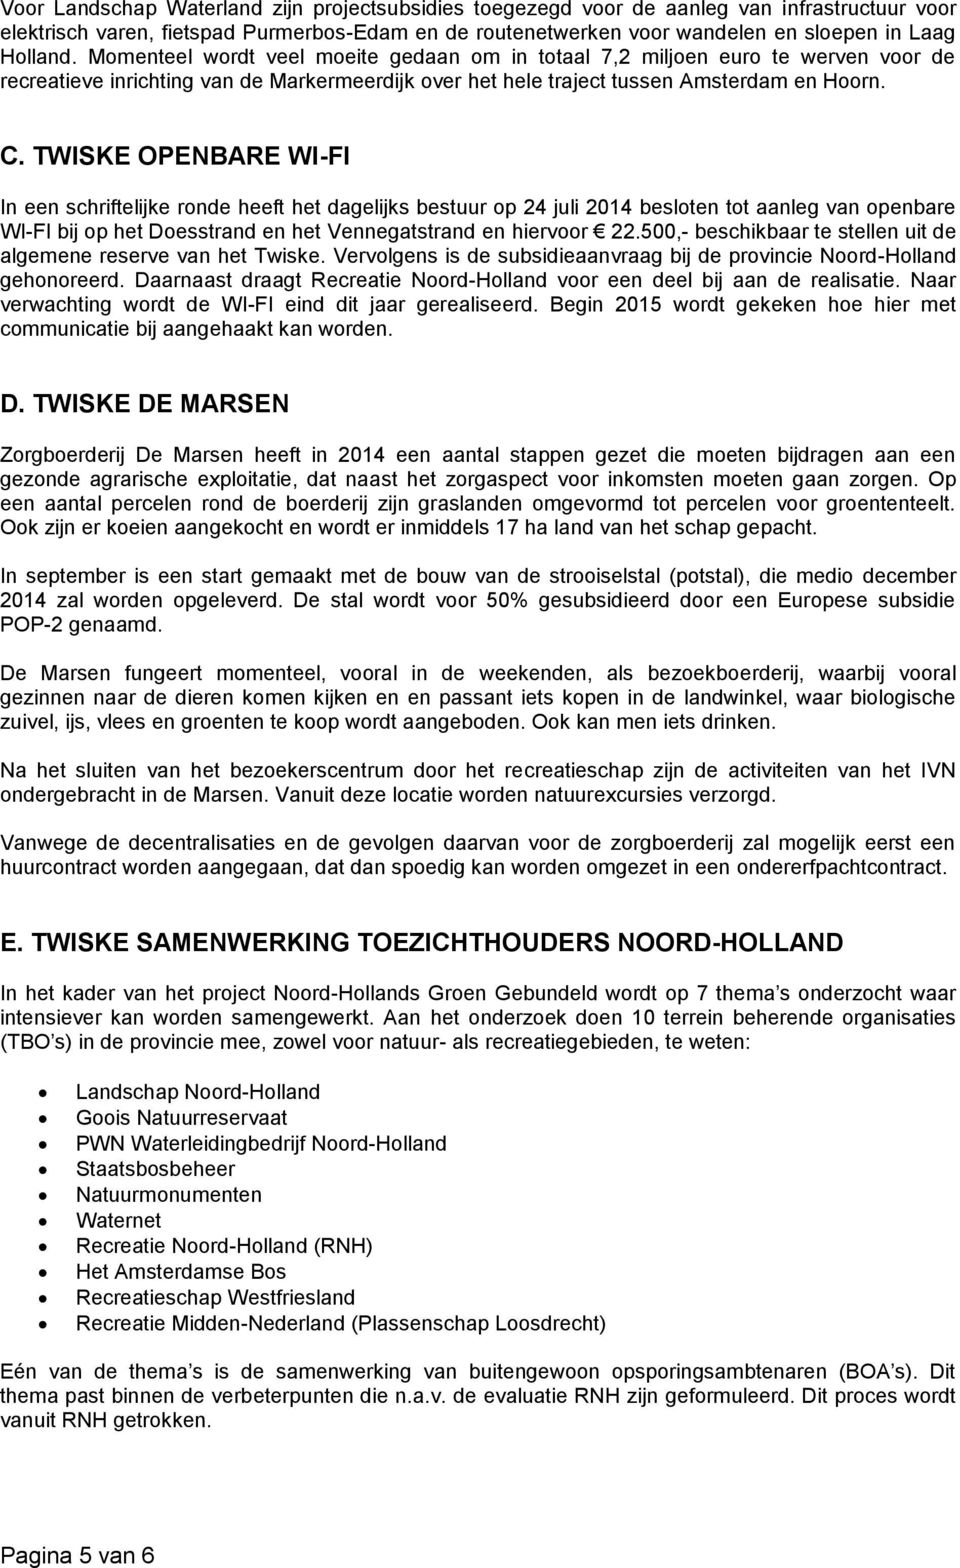 TWISKE OPENBARE WI-FI In een schriftelijke ronde heeft het dagelijks bestuur op 24 juli 2014 besloten tot aanleg van openbare WI-FI bij op het Doesstrand en het Vennegatstrand en hiervoor 22.